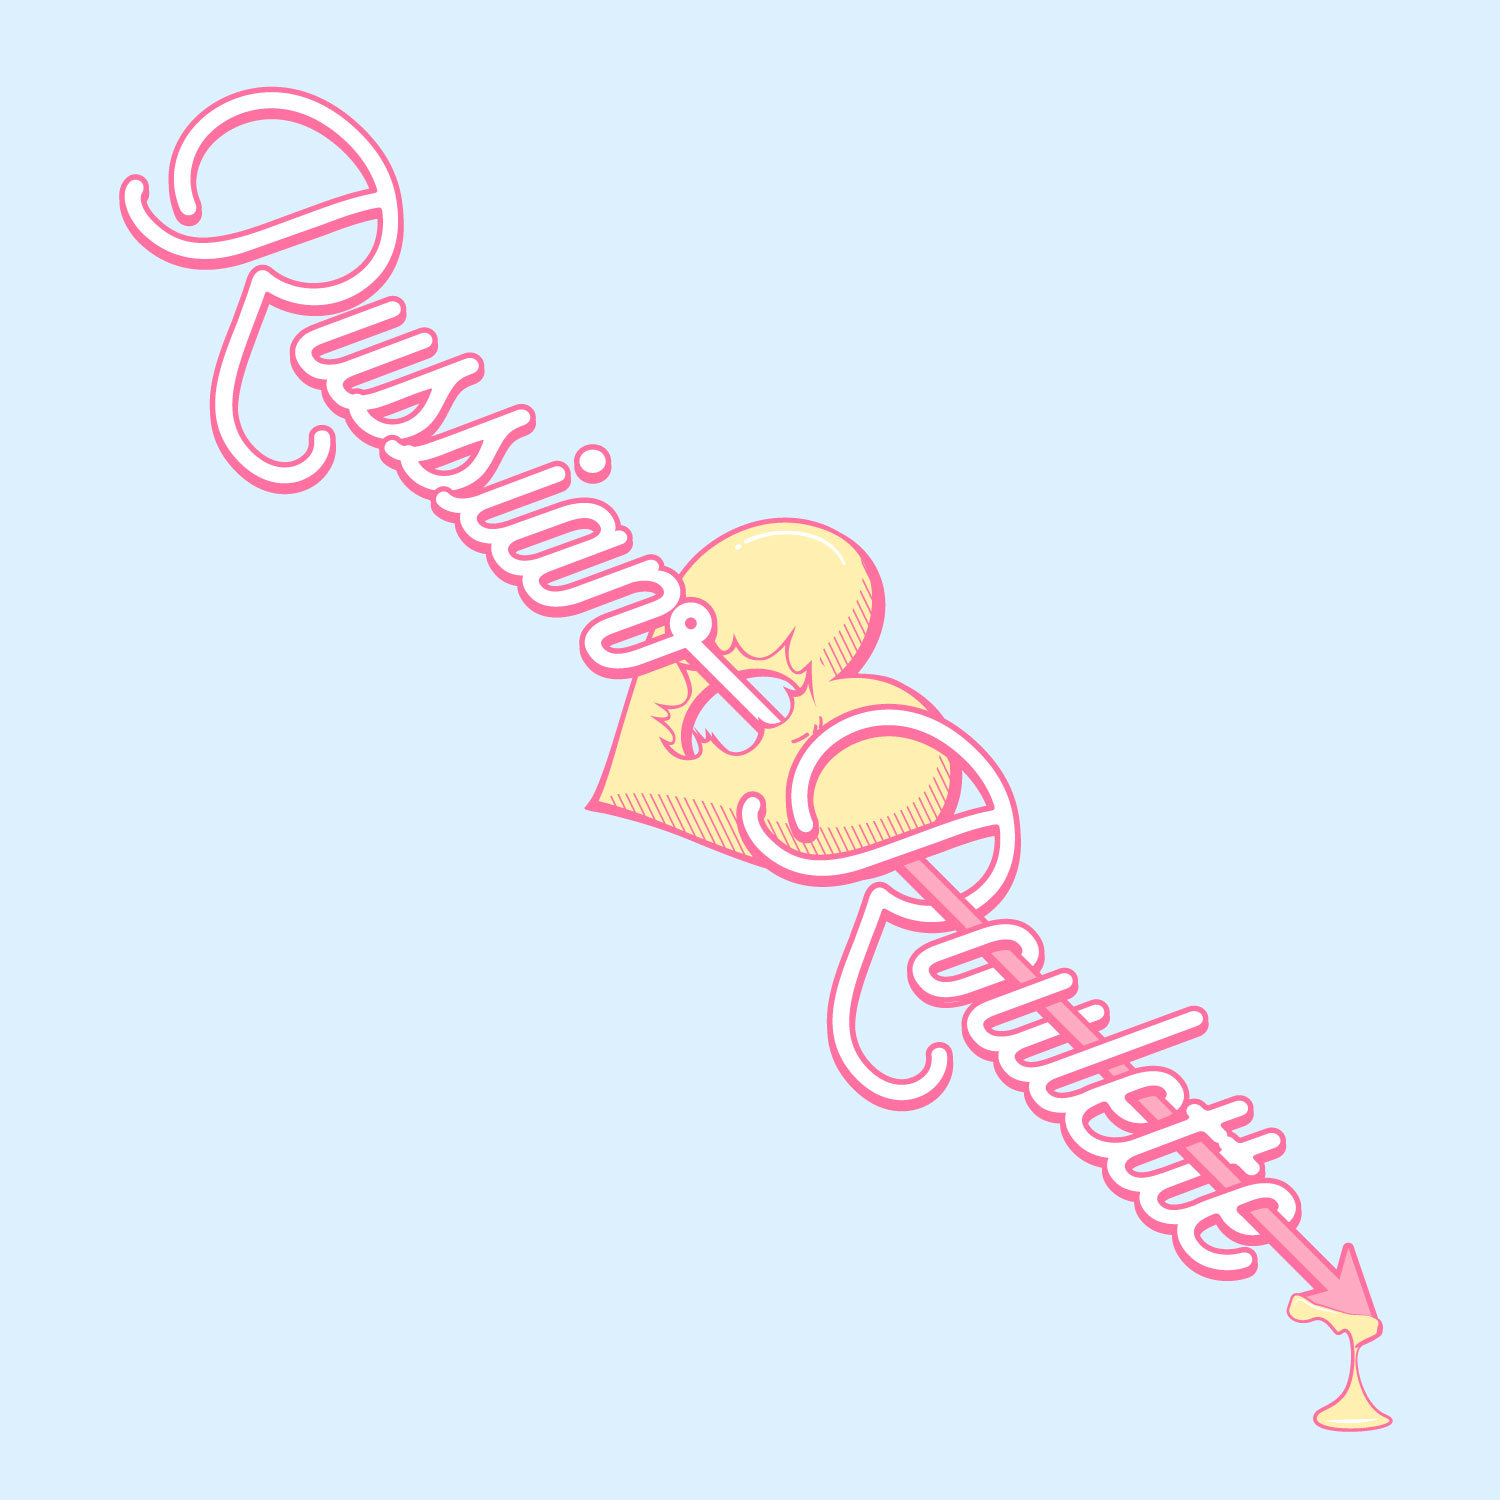 Red Velvet – Russian Roulette [Color Coded Lyrics] (ENG/ROM/HAN) 